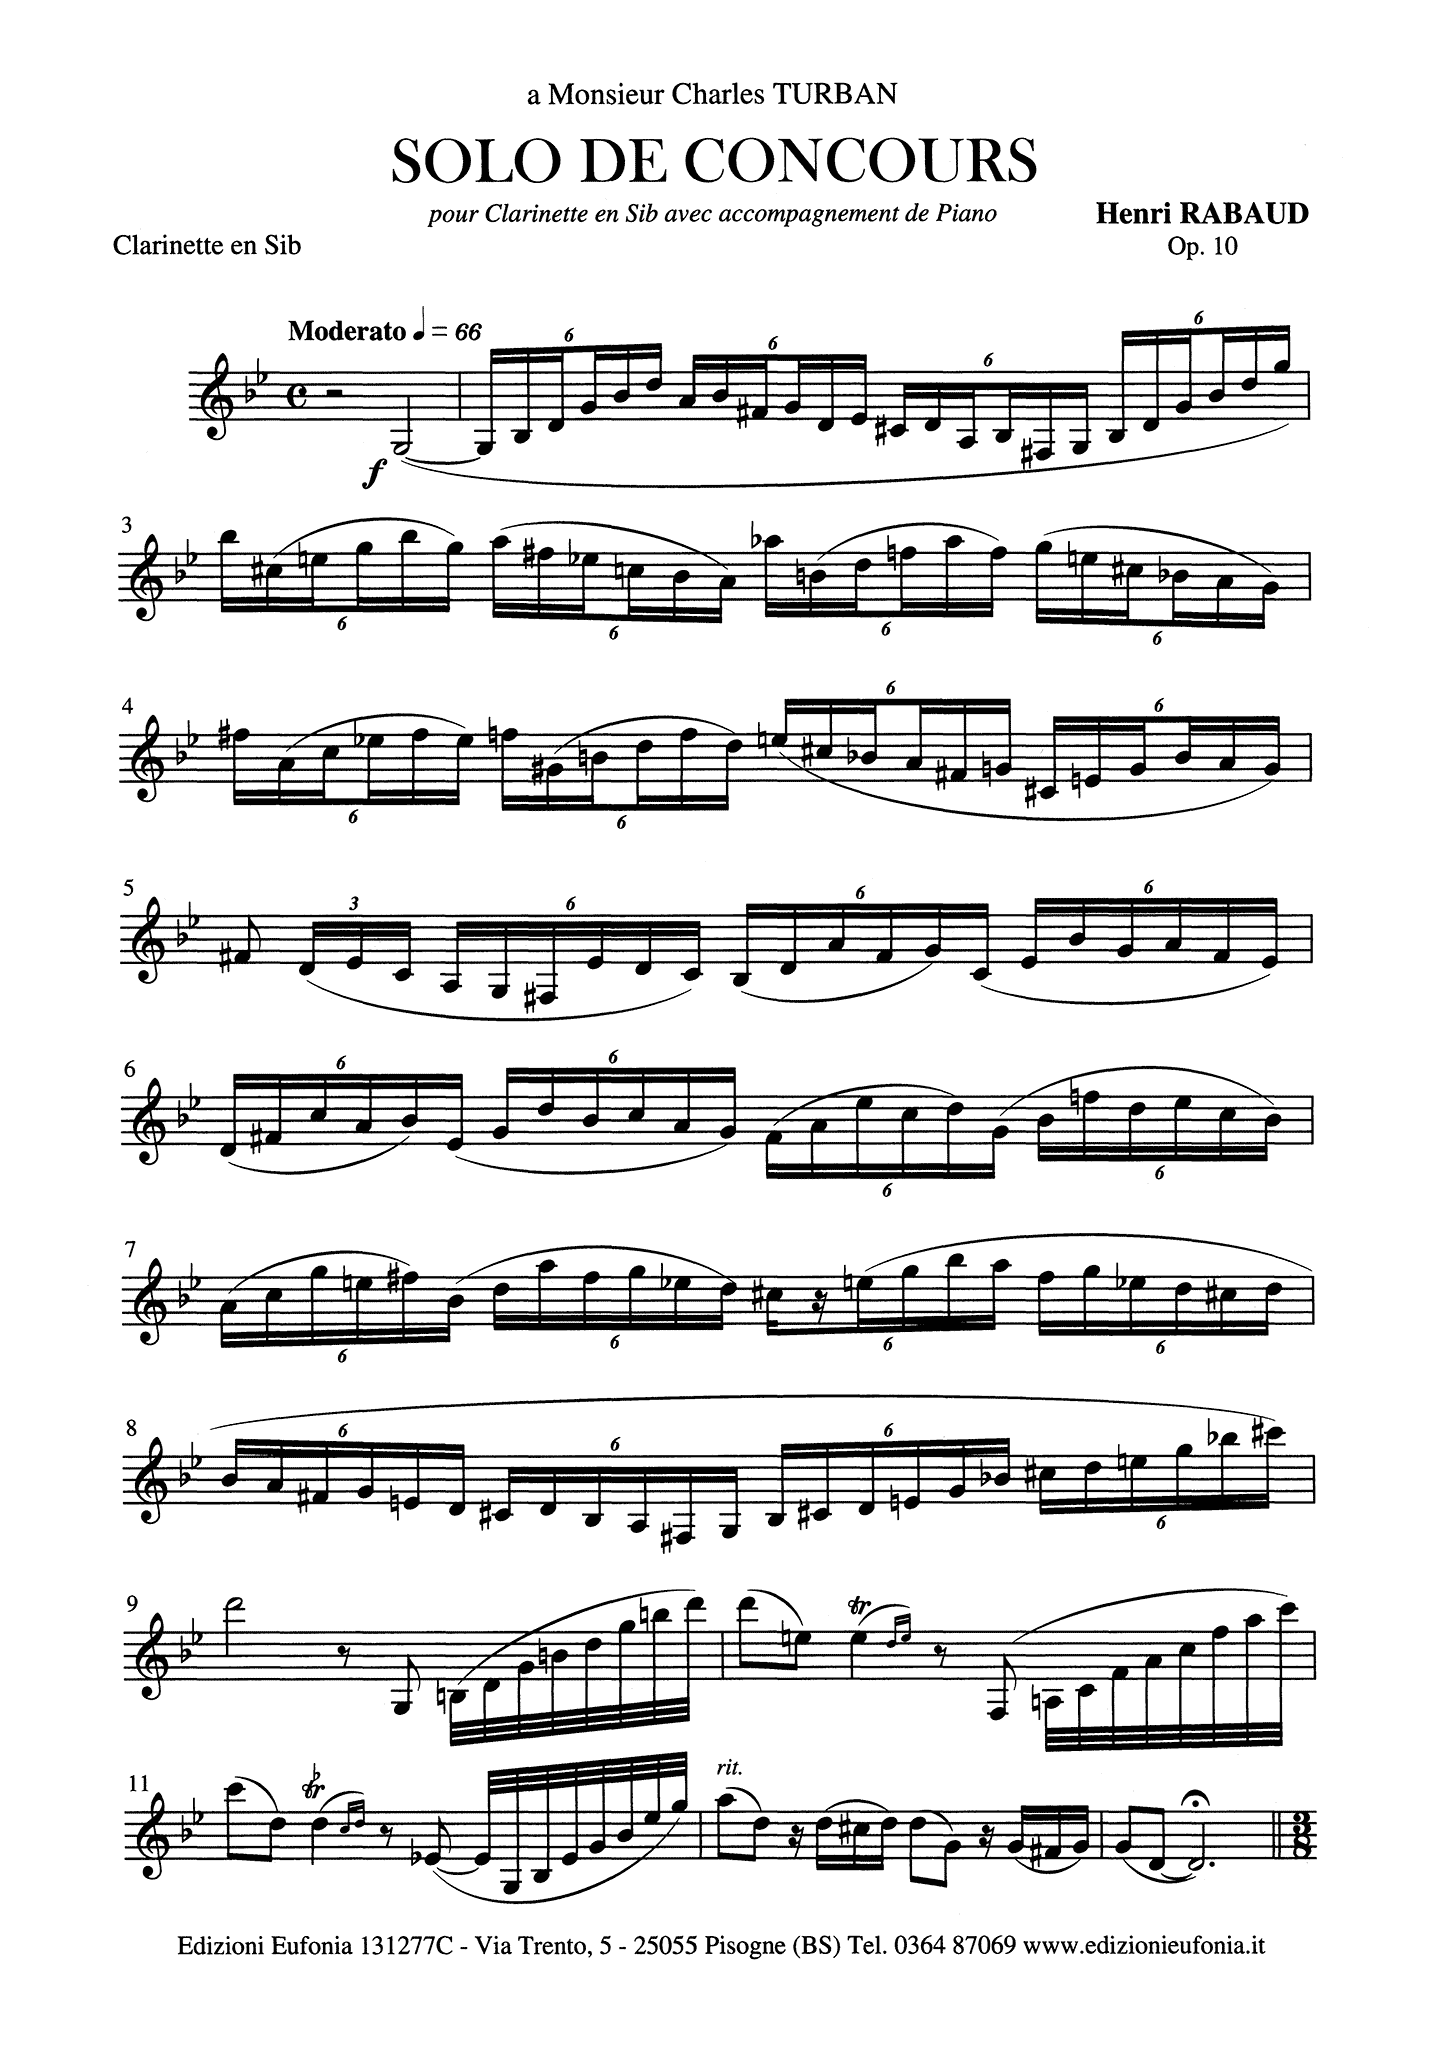 Solo de concours, Op. 10 Clarinet part